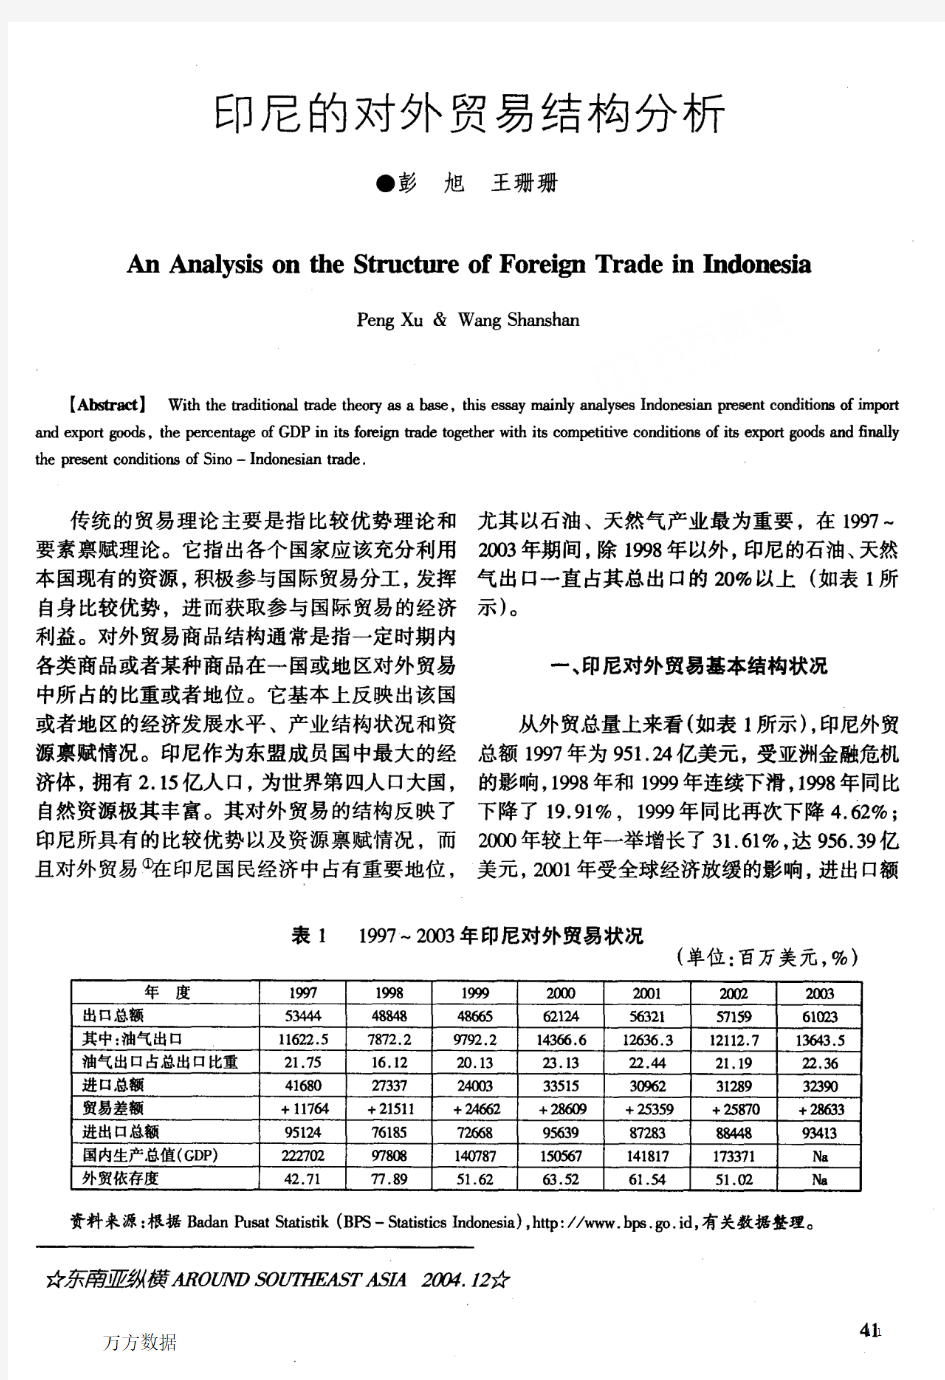 印尼的对外贸易结构分析